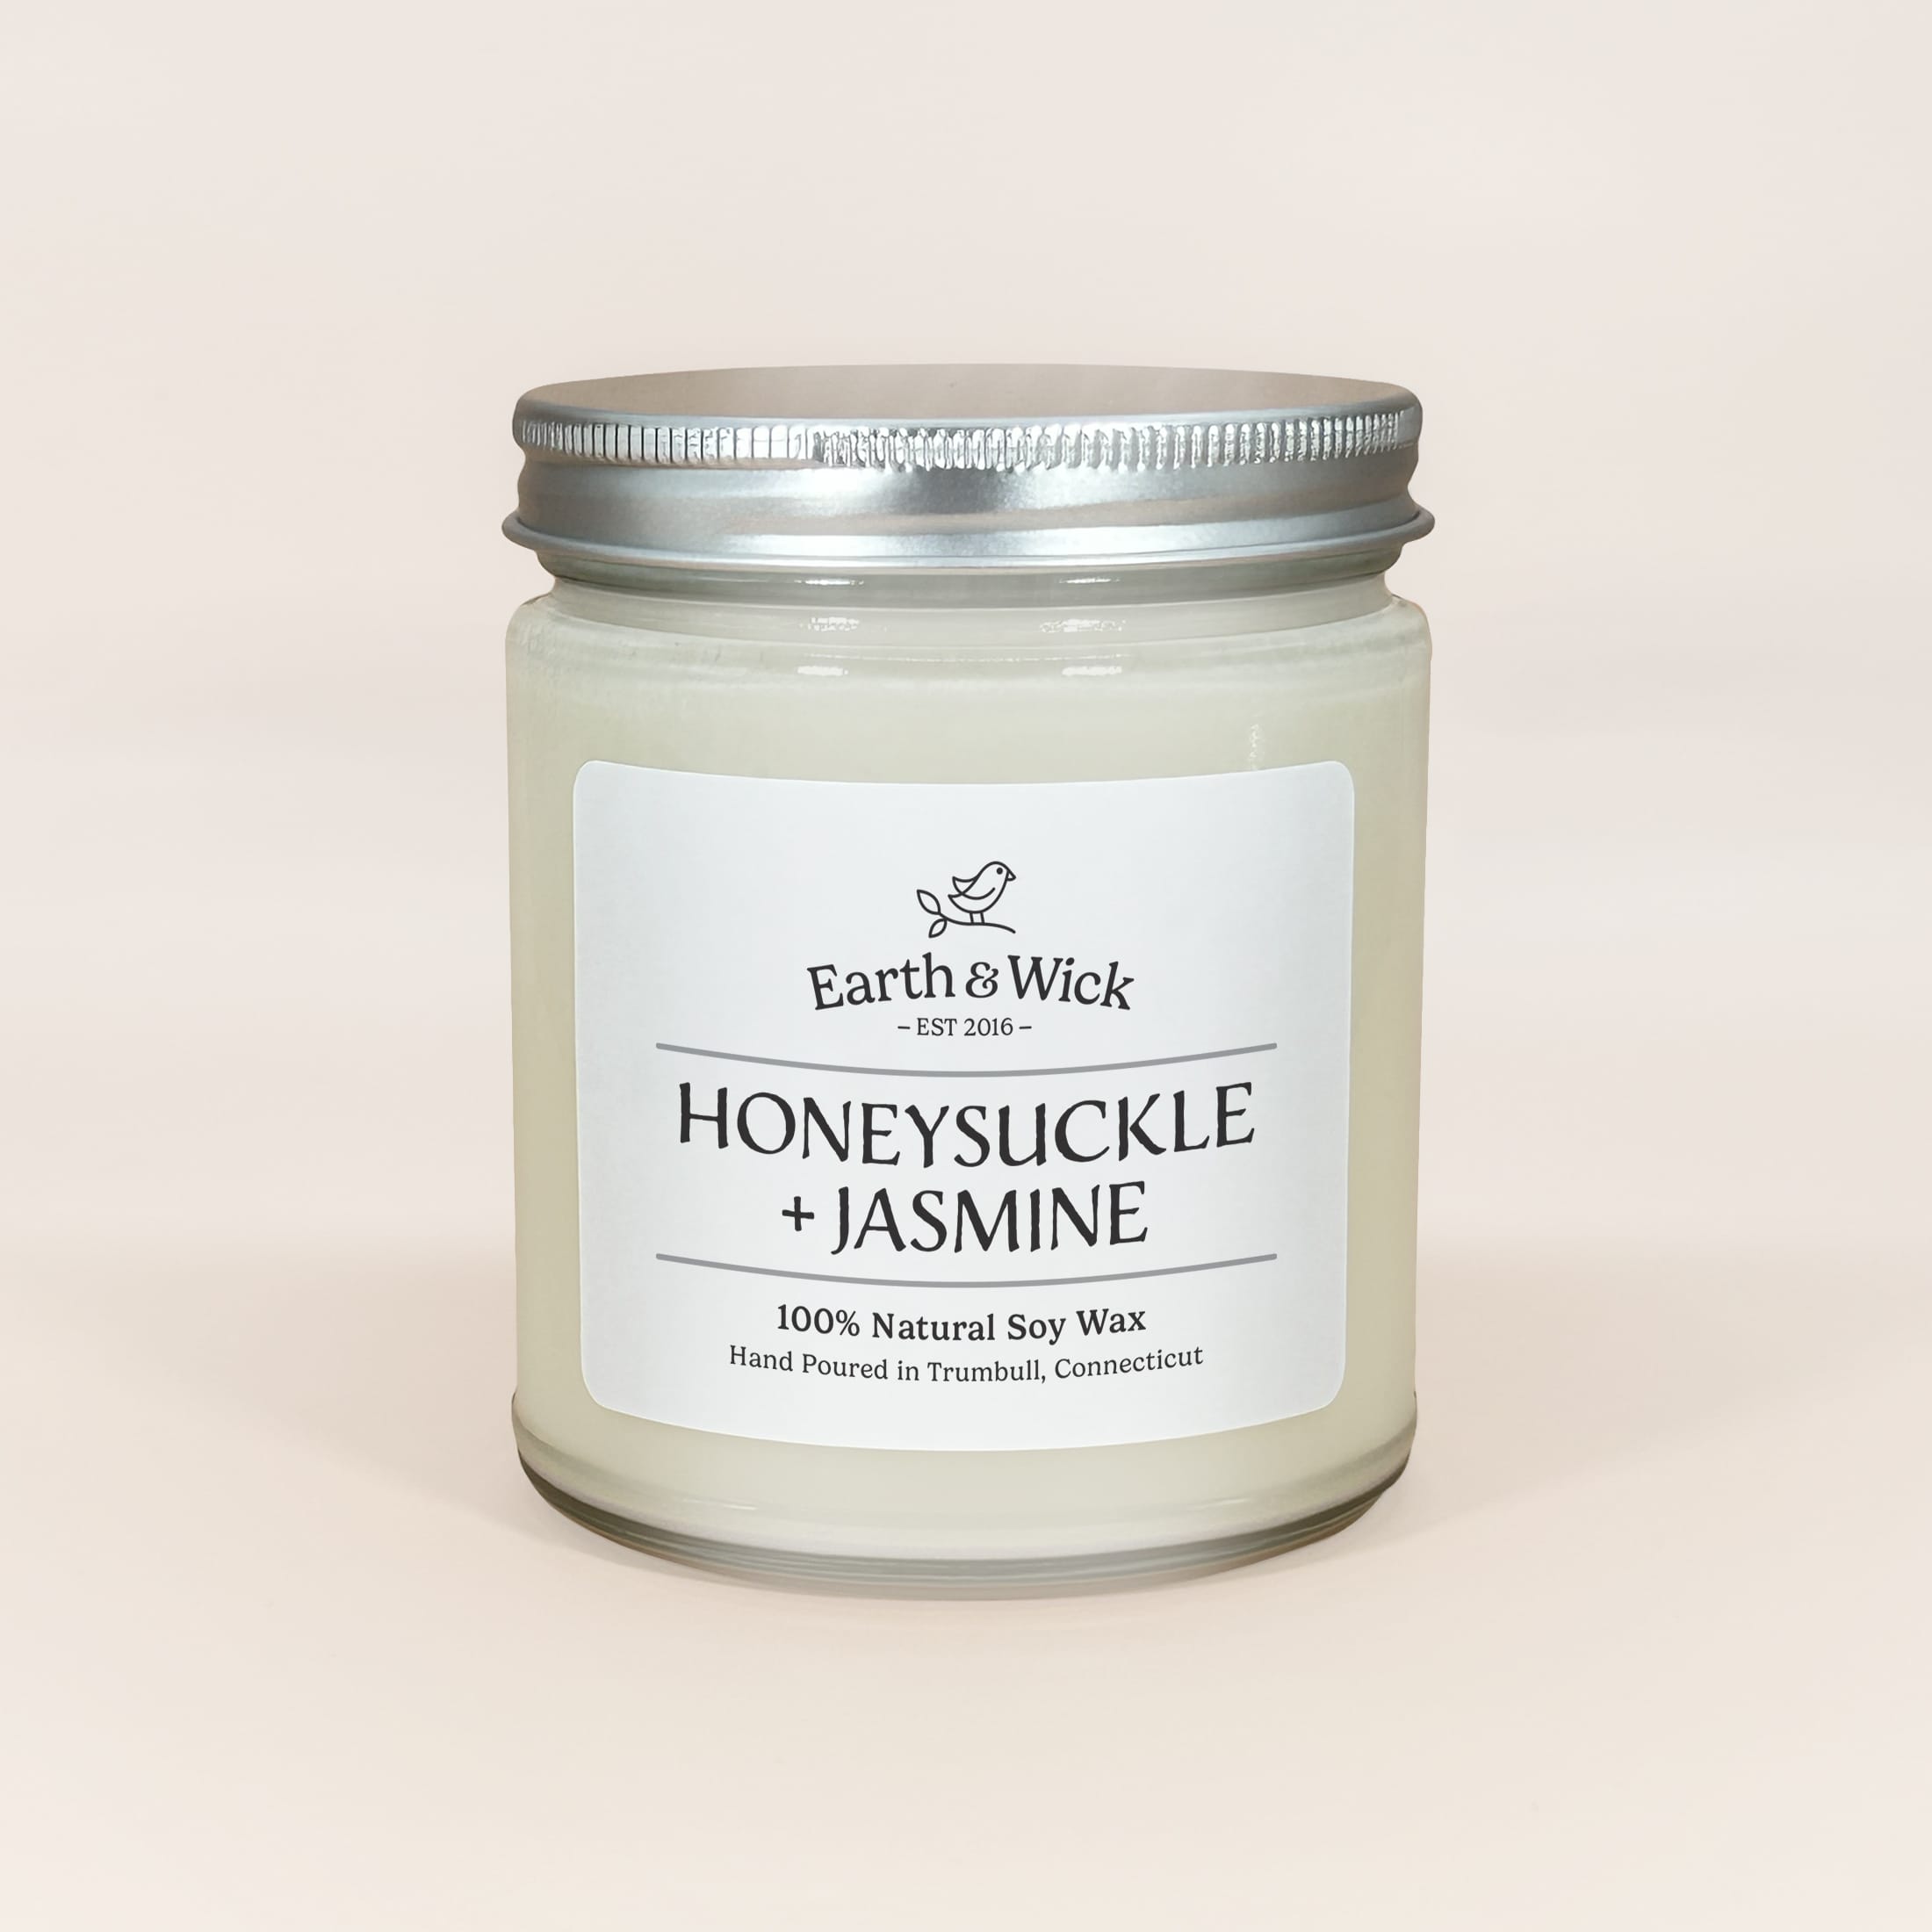 Honeysuckle + Jasmine